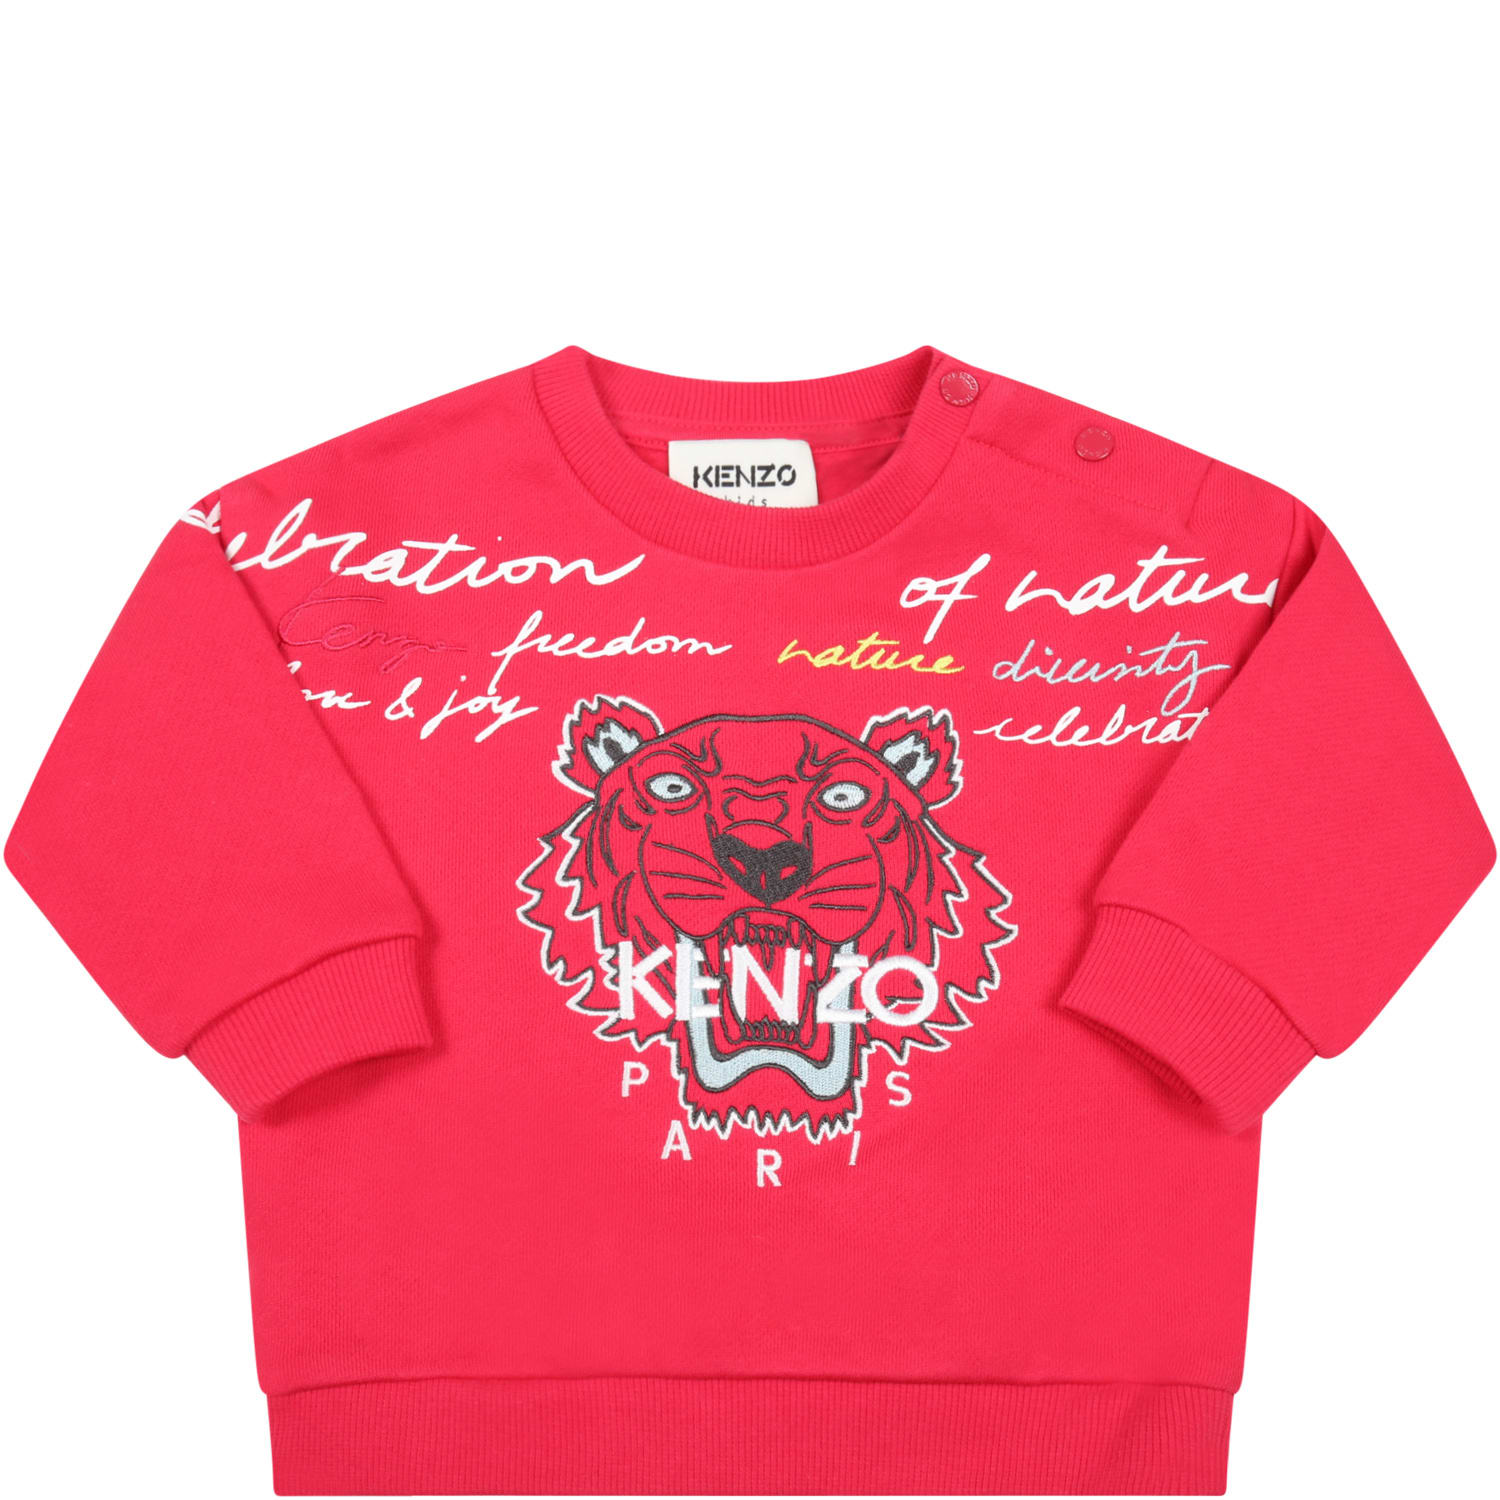 Kenzo Kids Fuchsia Sweatshirt For Baby Girl With Tiger